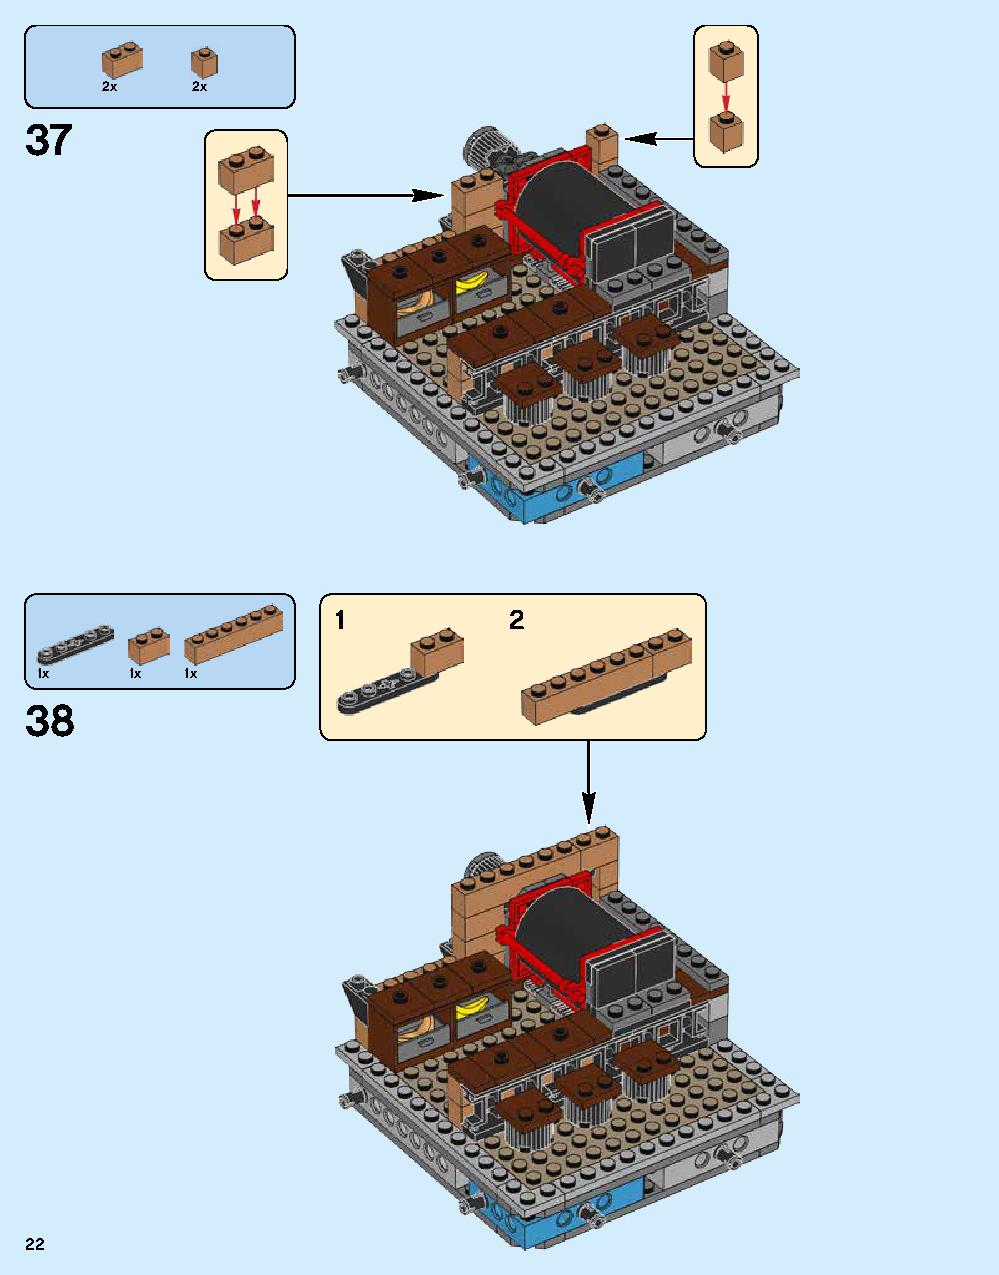 ニンジャゴー シティ 70620 レゴの商品情報 レゴの説明書・組立方法 22 page